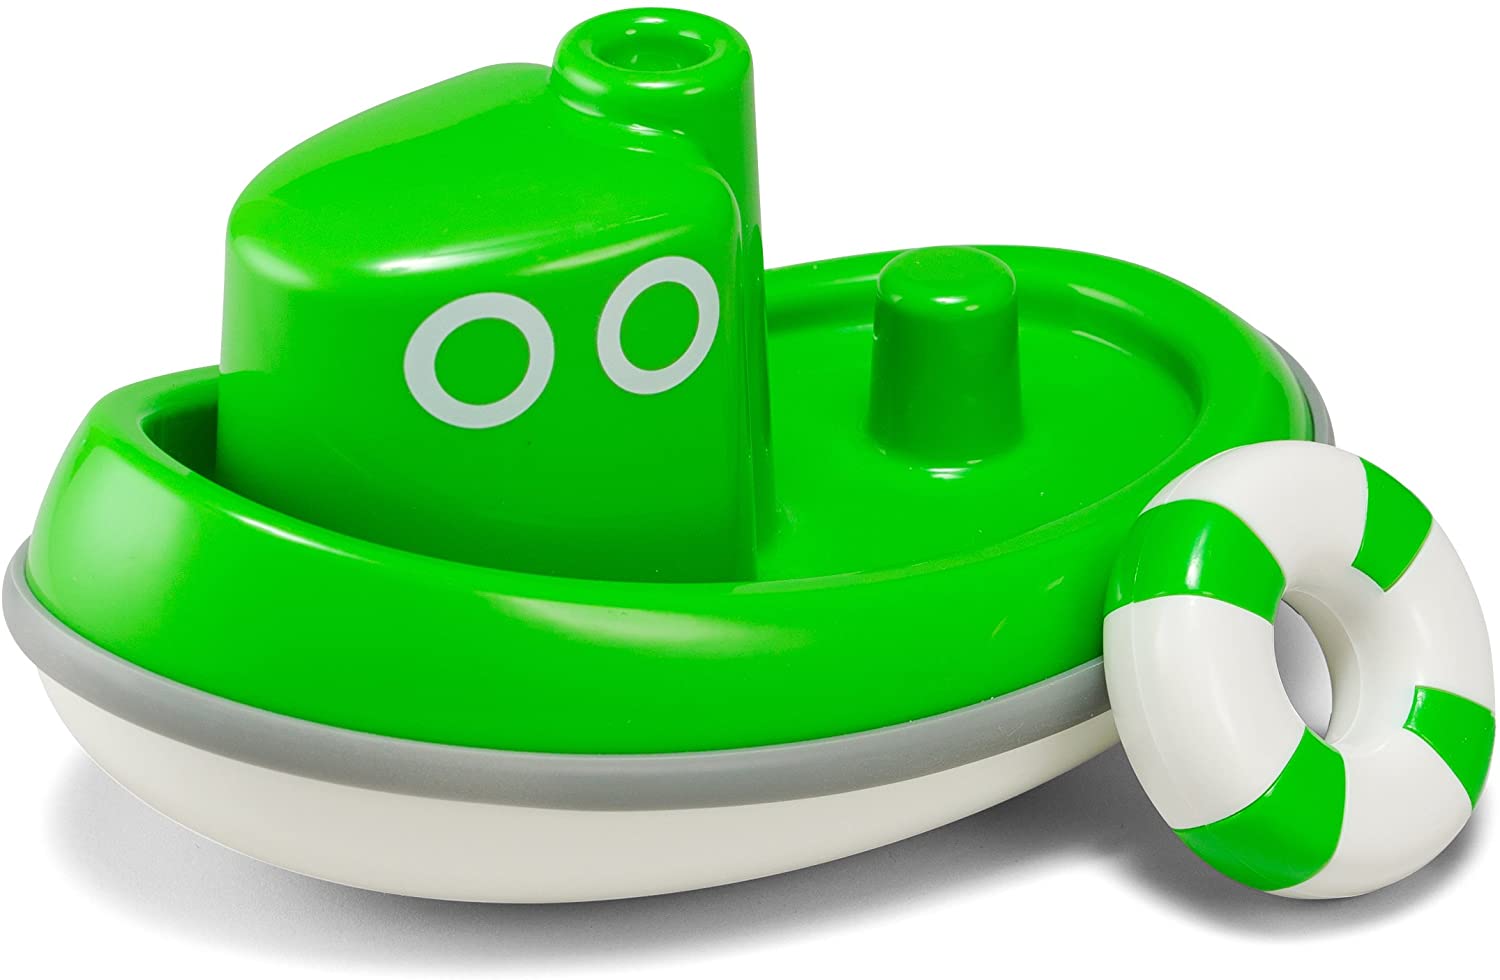 KID O Tug Boat Green - ANB Baby -Baby Bath Toy Bin